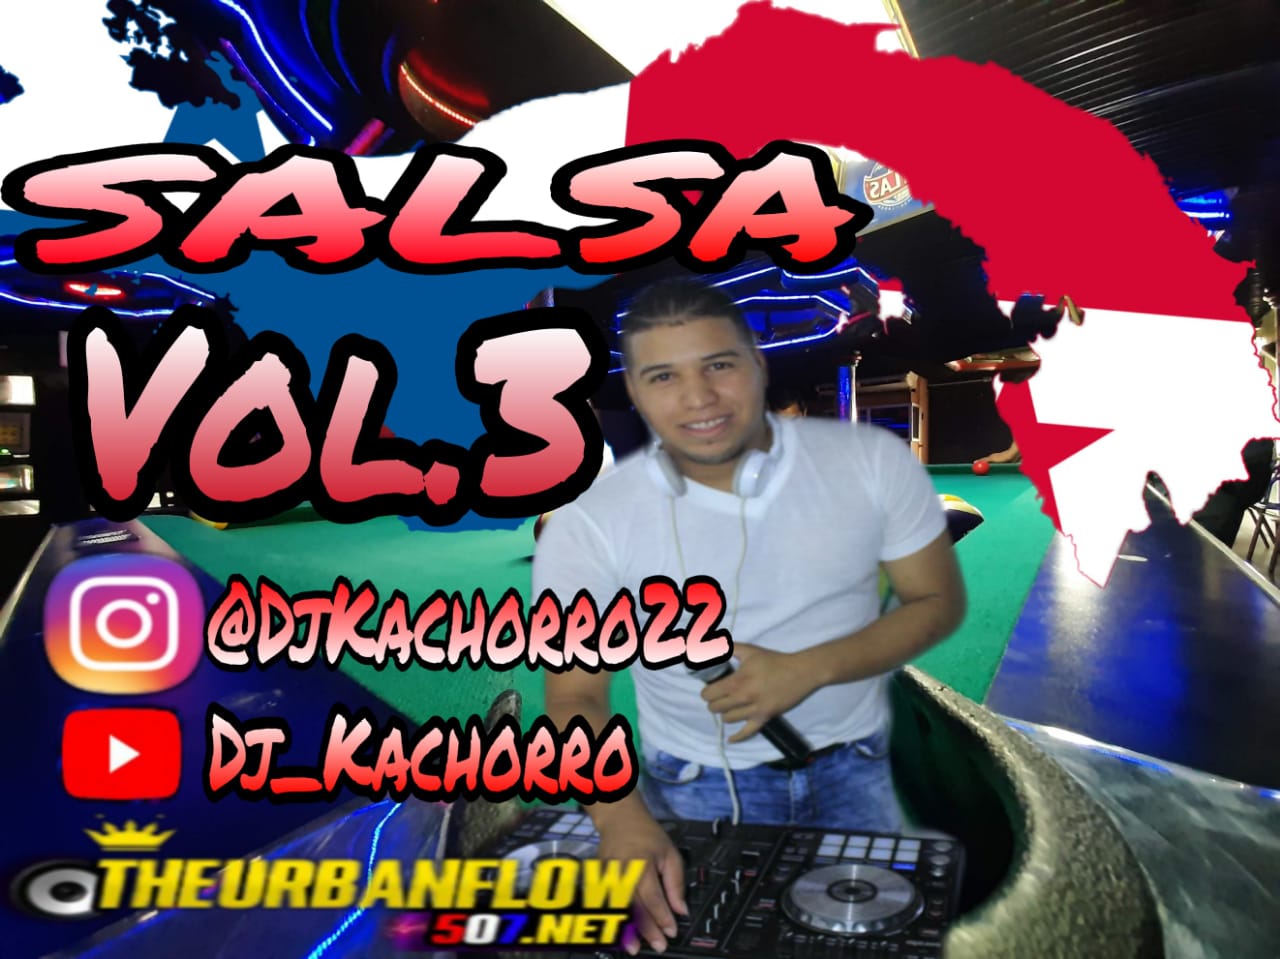 SalsaVol3 Mix - @DJkachorro22